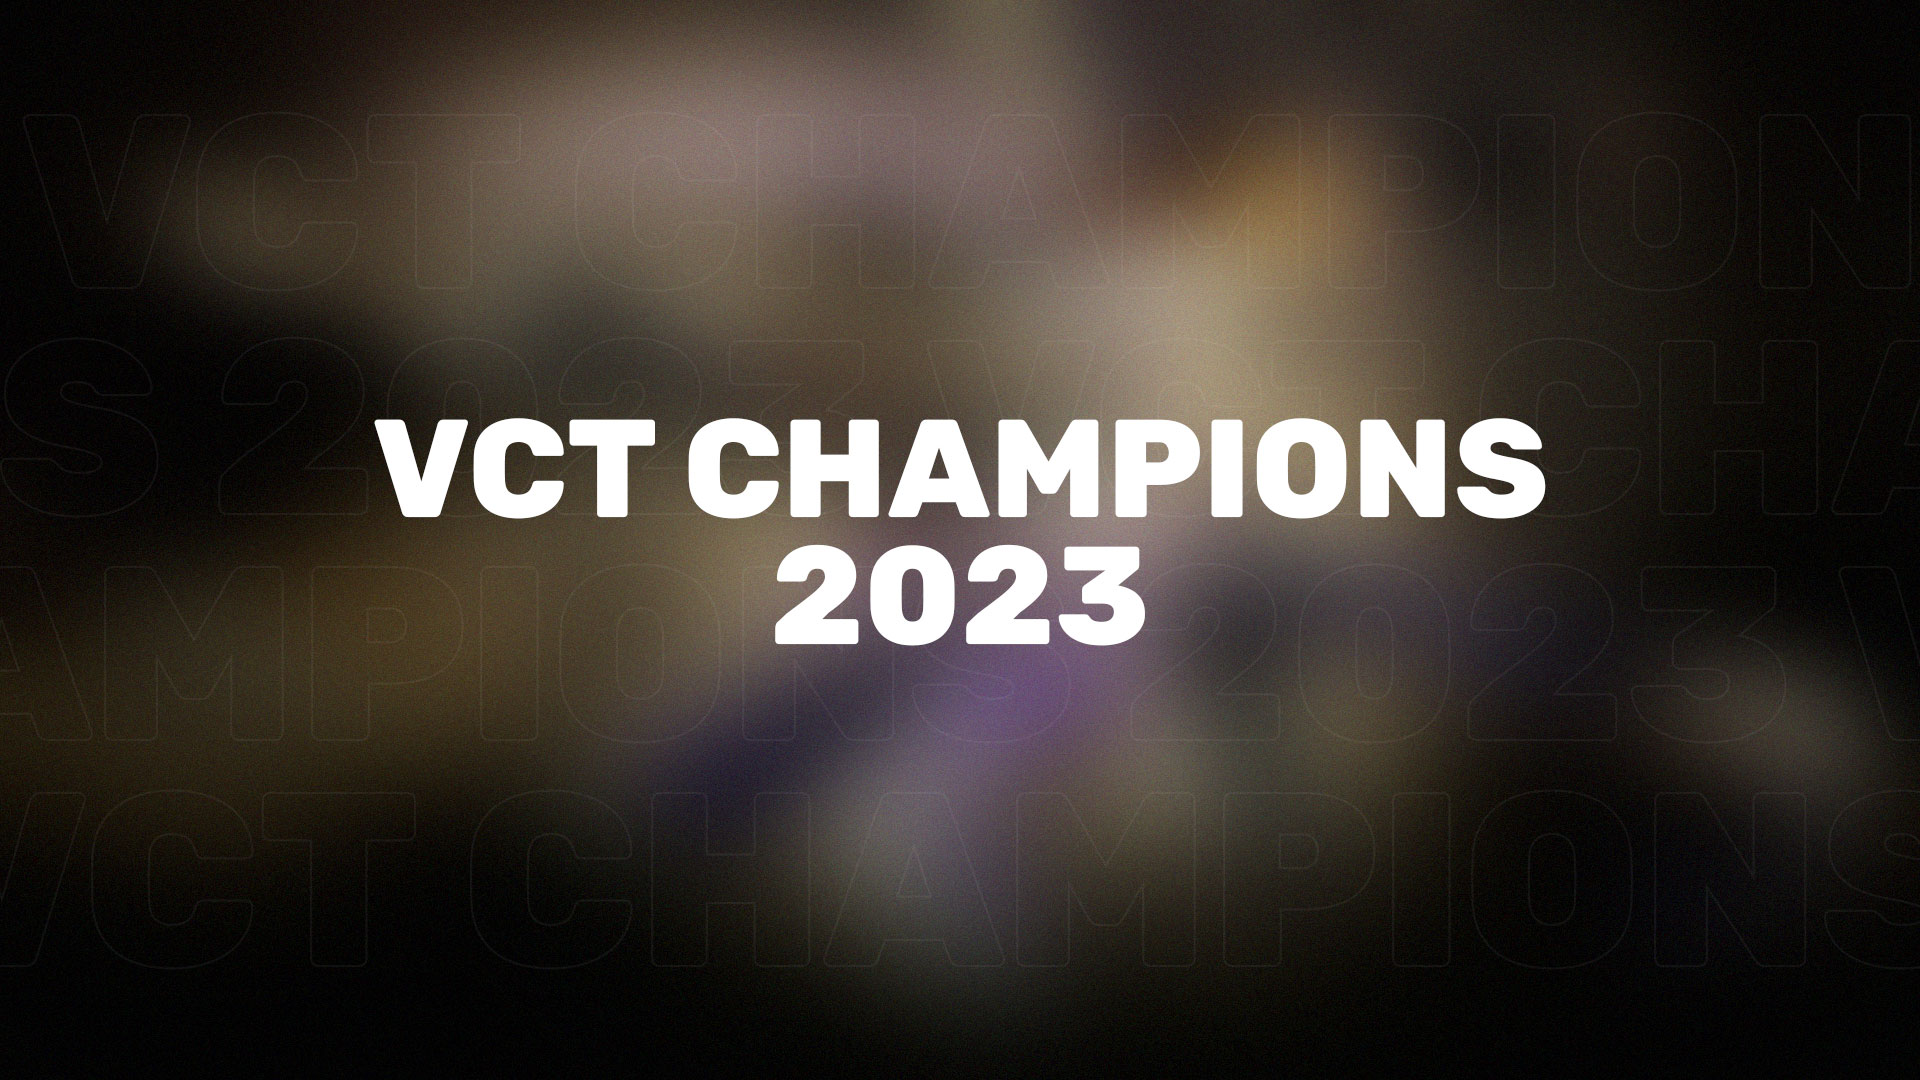 Разработчики Valorant представили новую коллекцию скинов VCT Champions 2023, которая посвящена проходящему турниру.